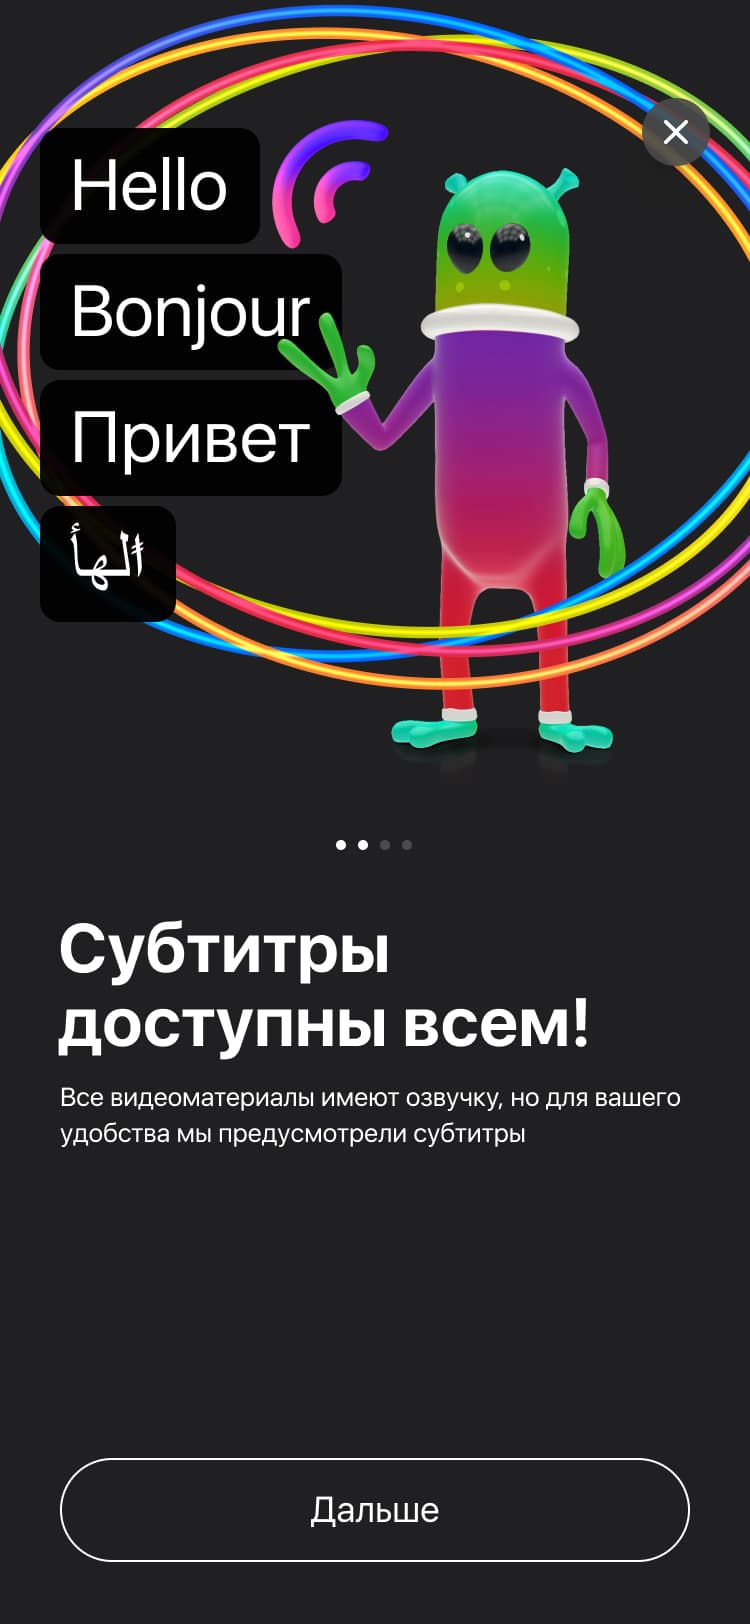 Мобильное приложение павильона России на Dubai Expo 2020. Вводная информация.